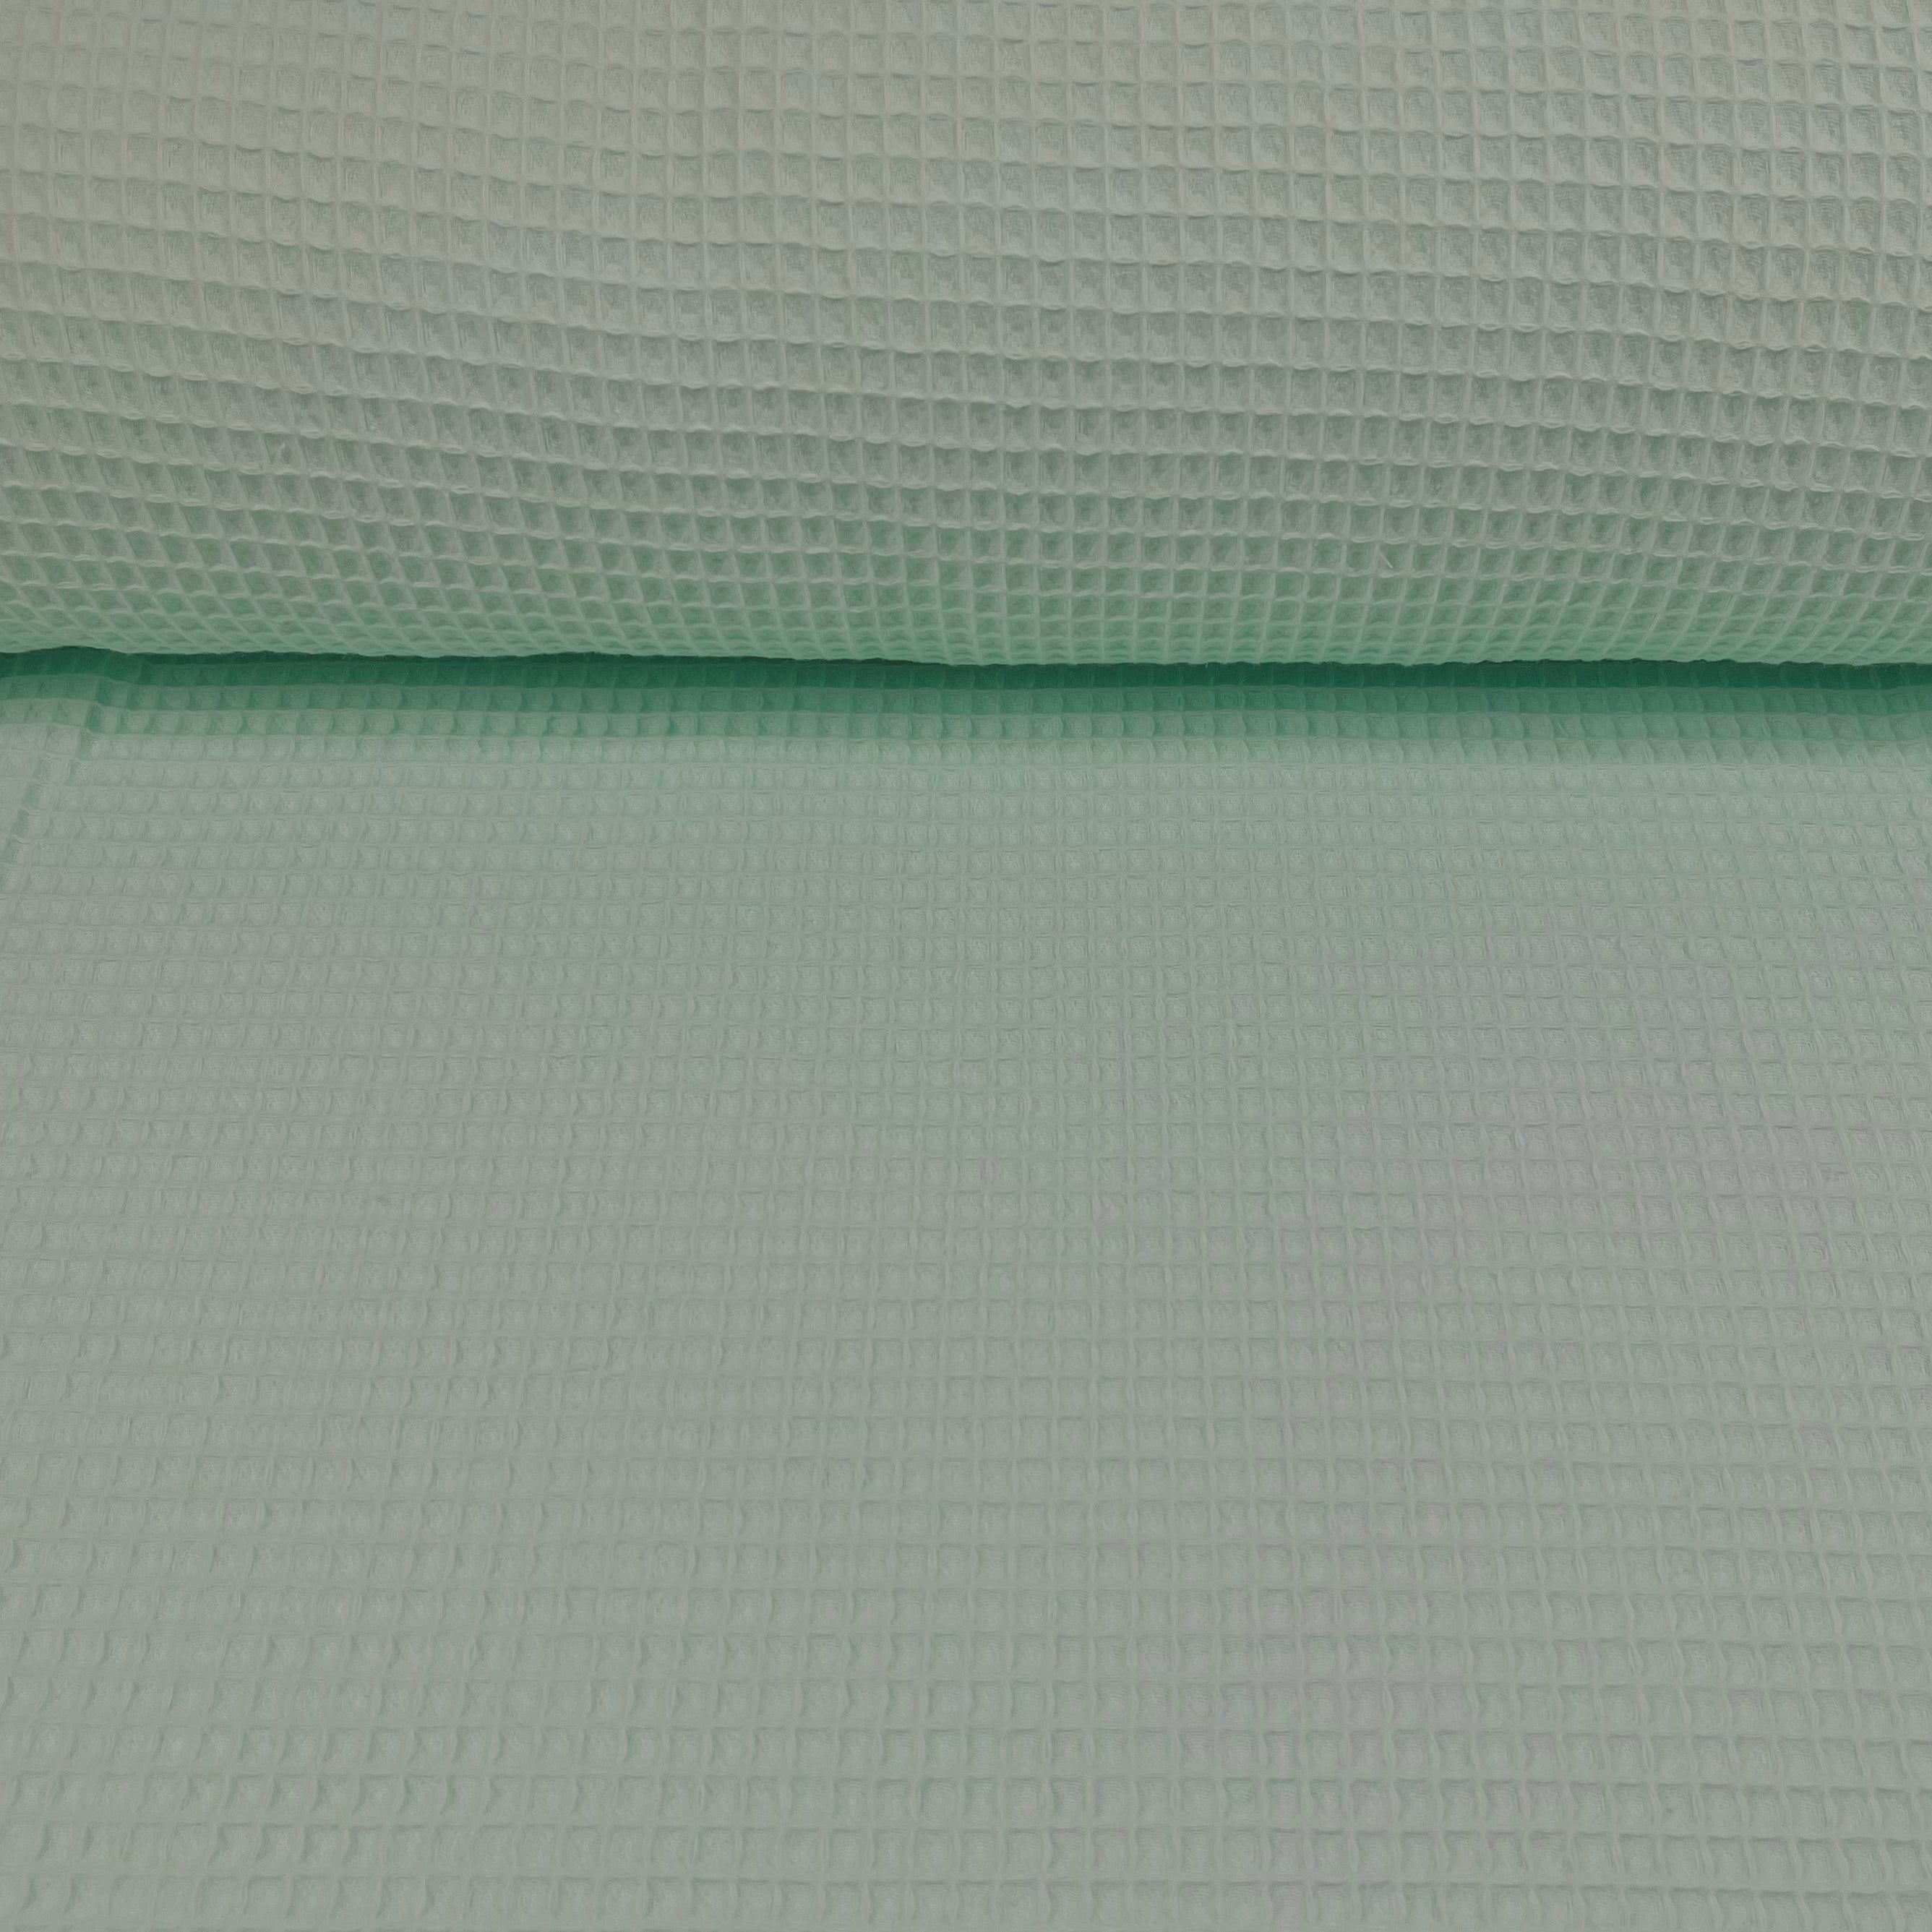 Waffelstoff mintgrün Fabric poshpinks